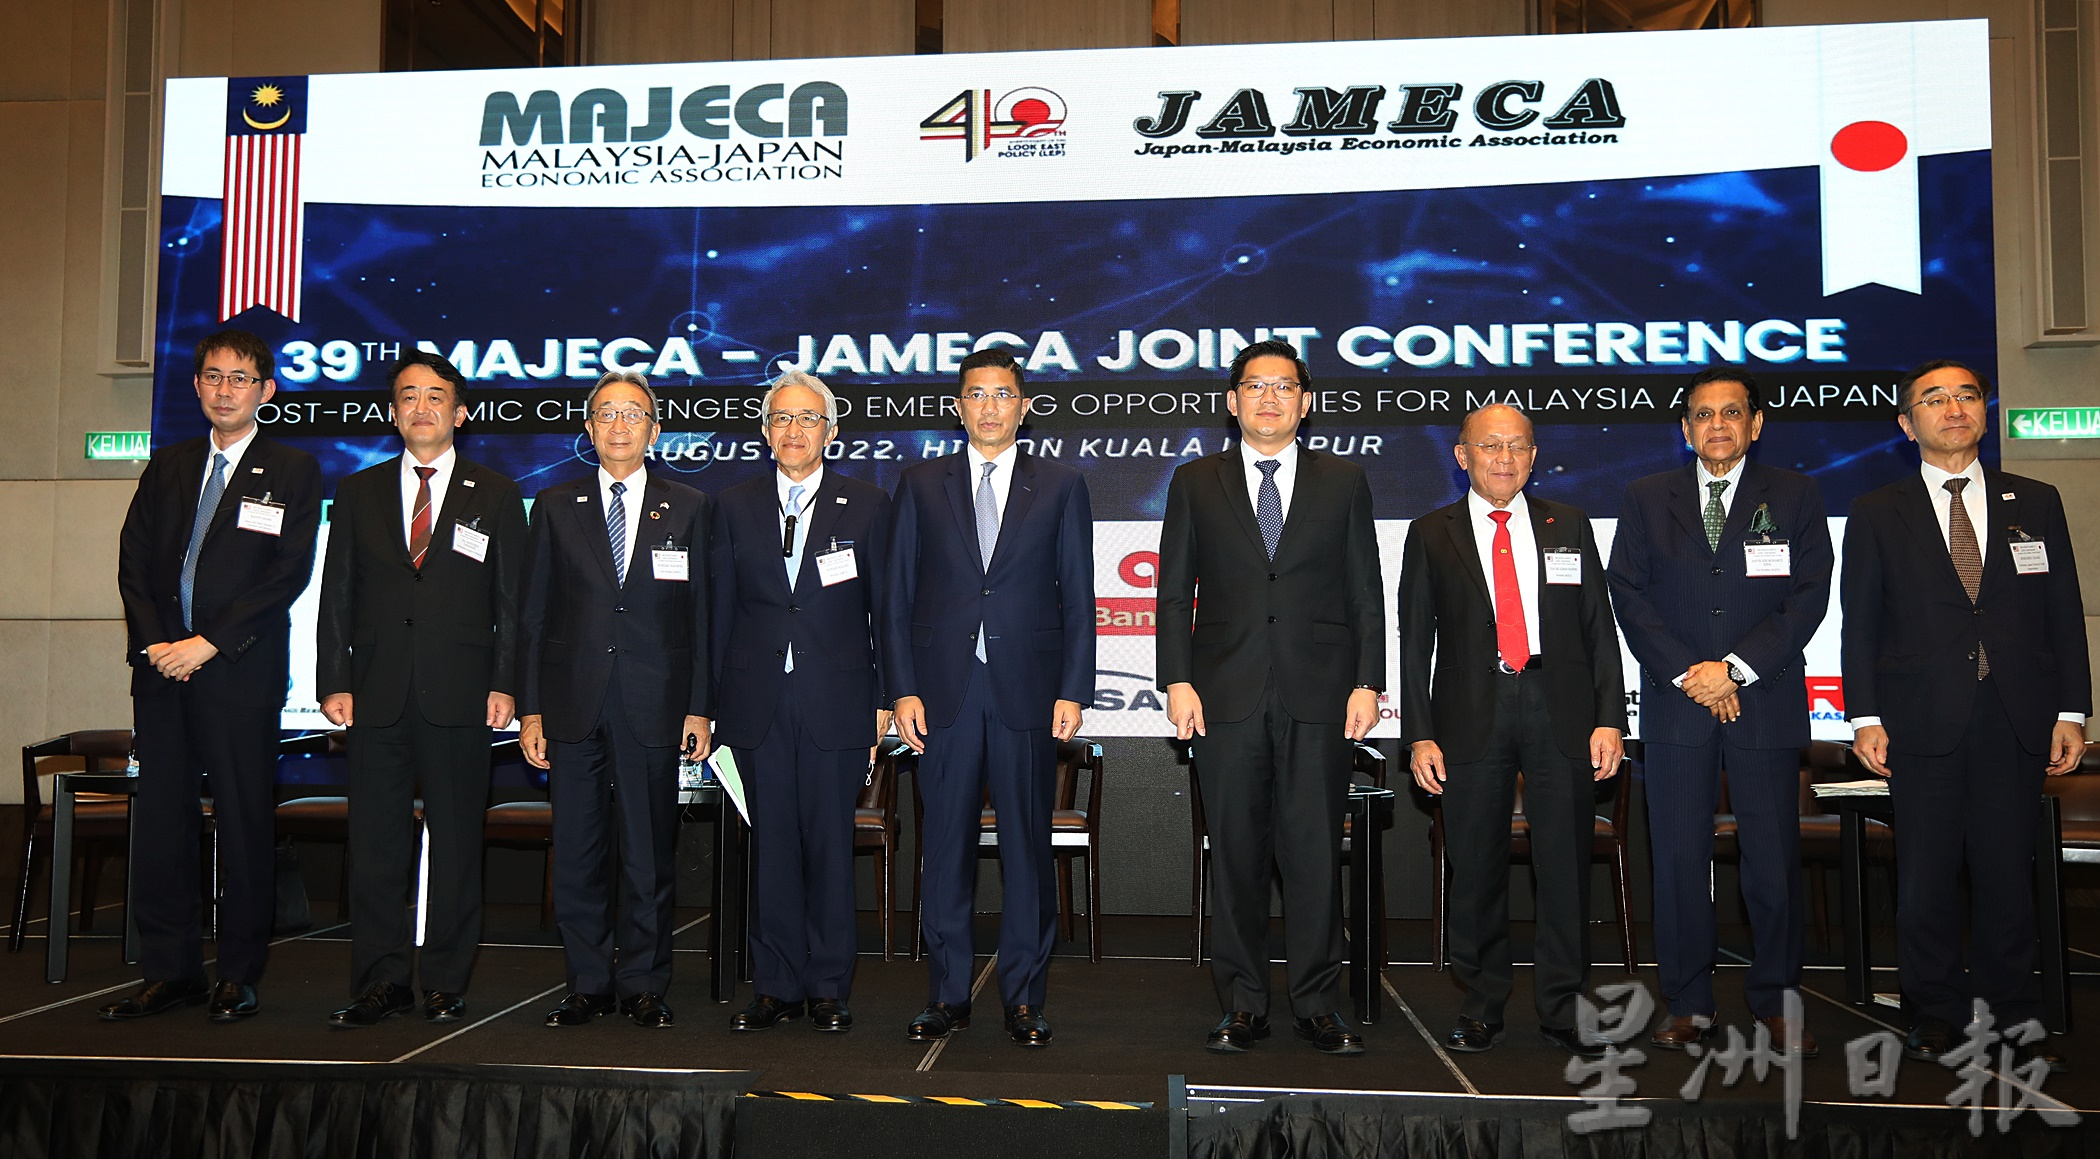 首相为第39届马来西亚-日本经济协会(MAJECA)和日本-马来西亚经济协会(JAMECA)联席大会讲稿